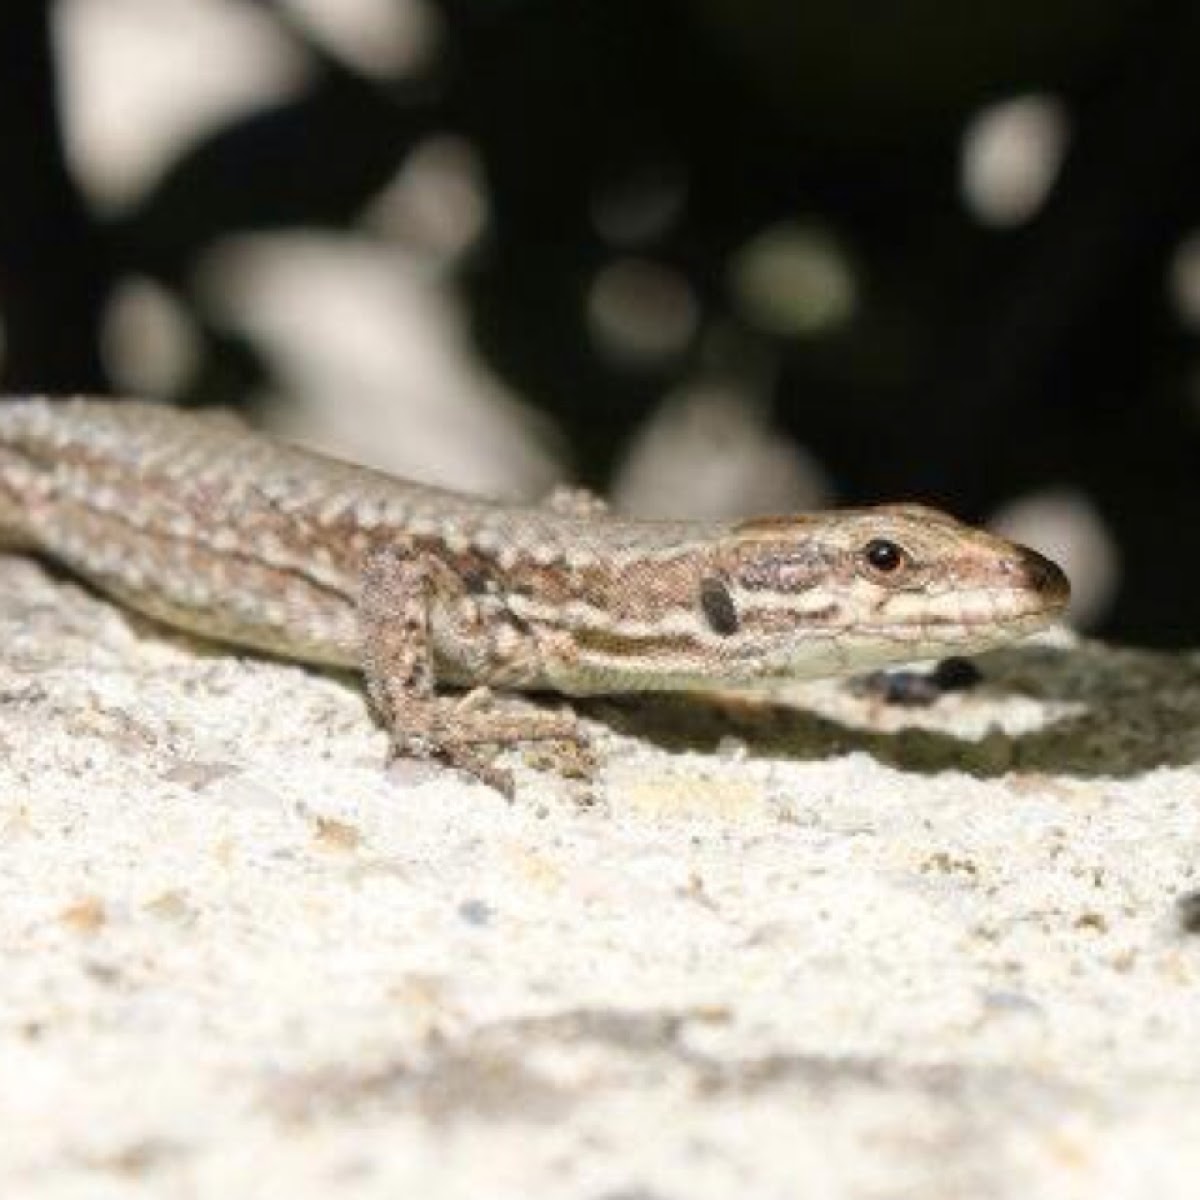 Common wall lizard - Lézard des murailles